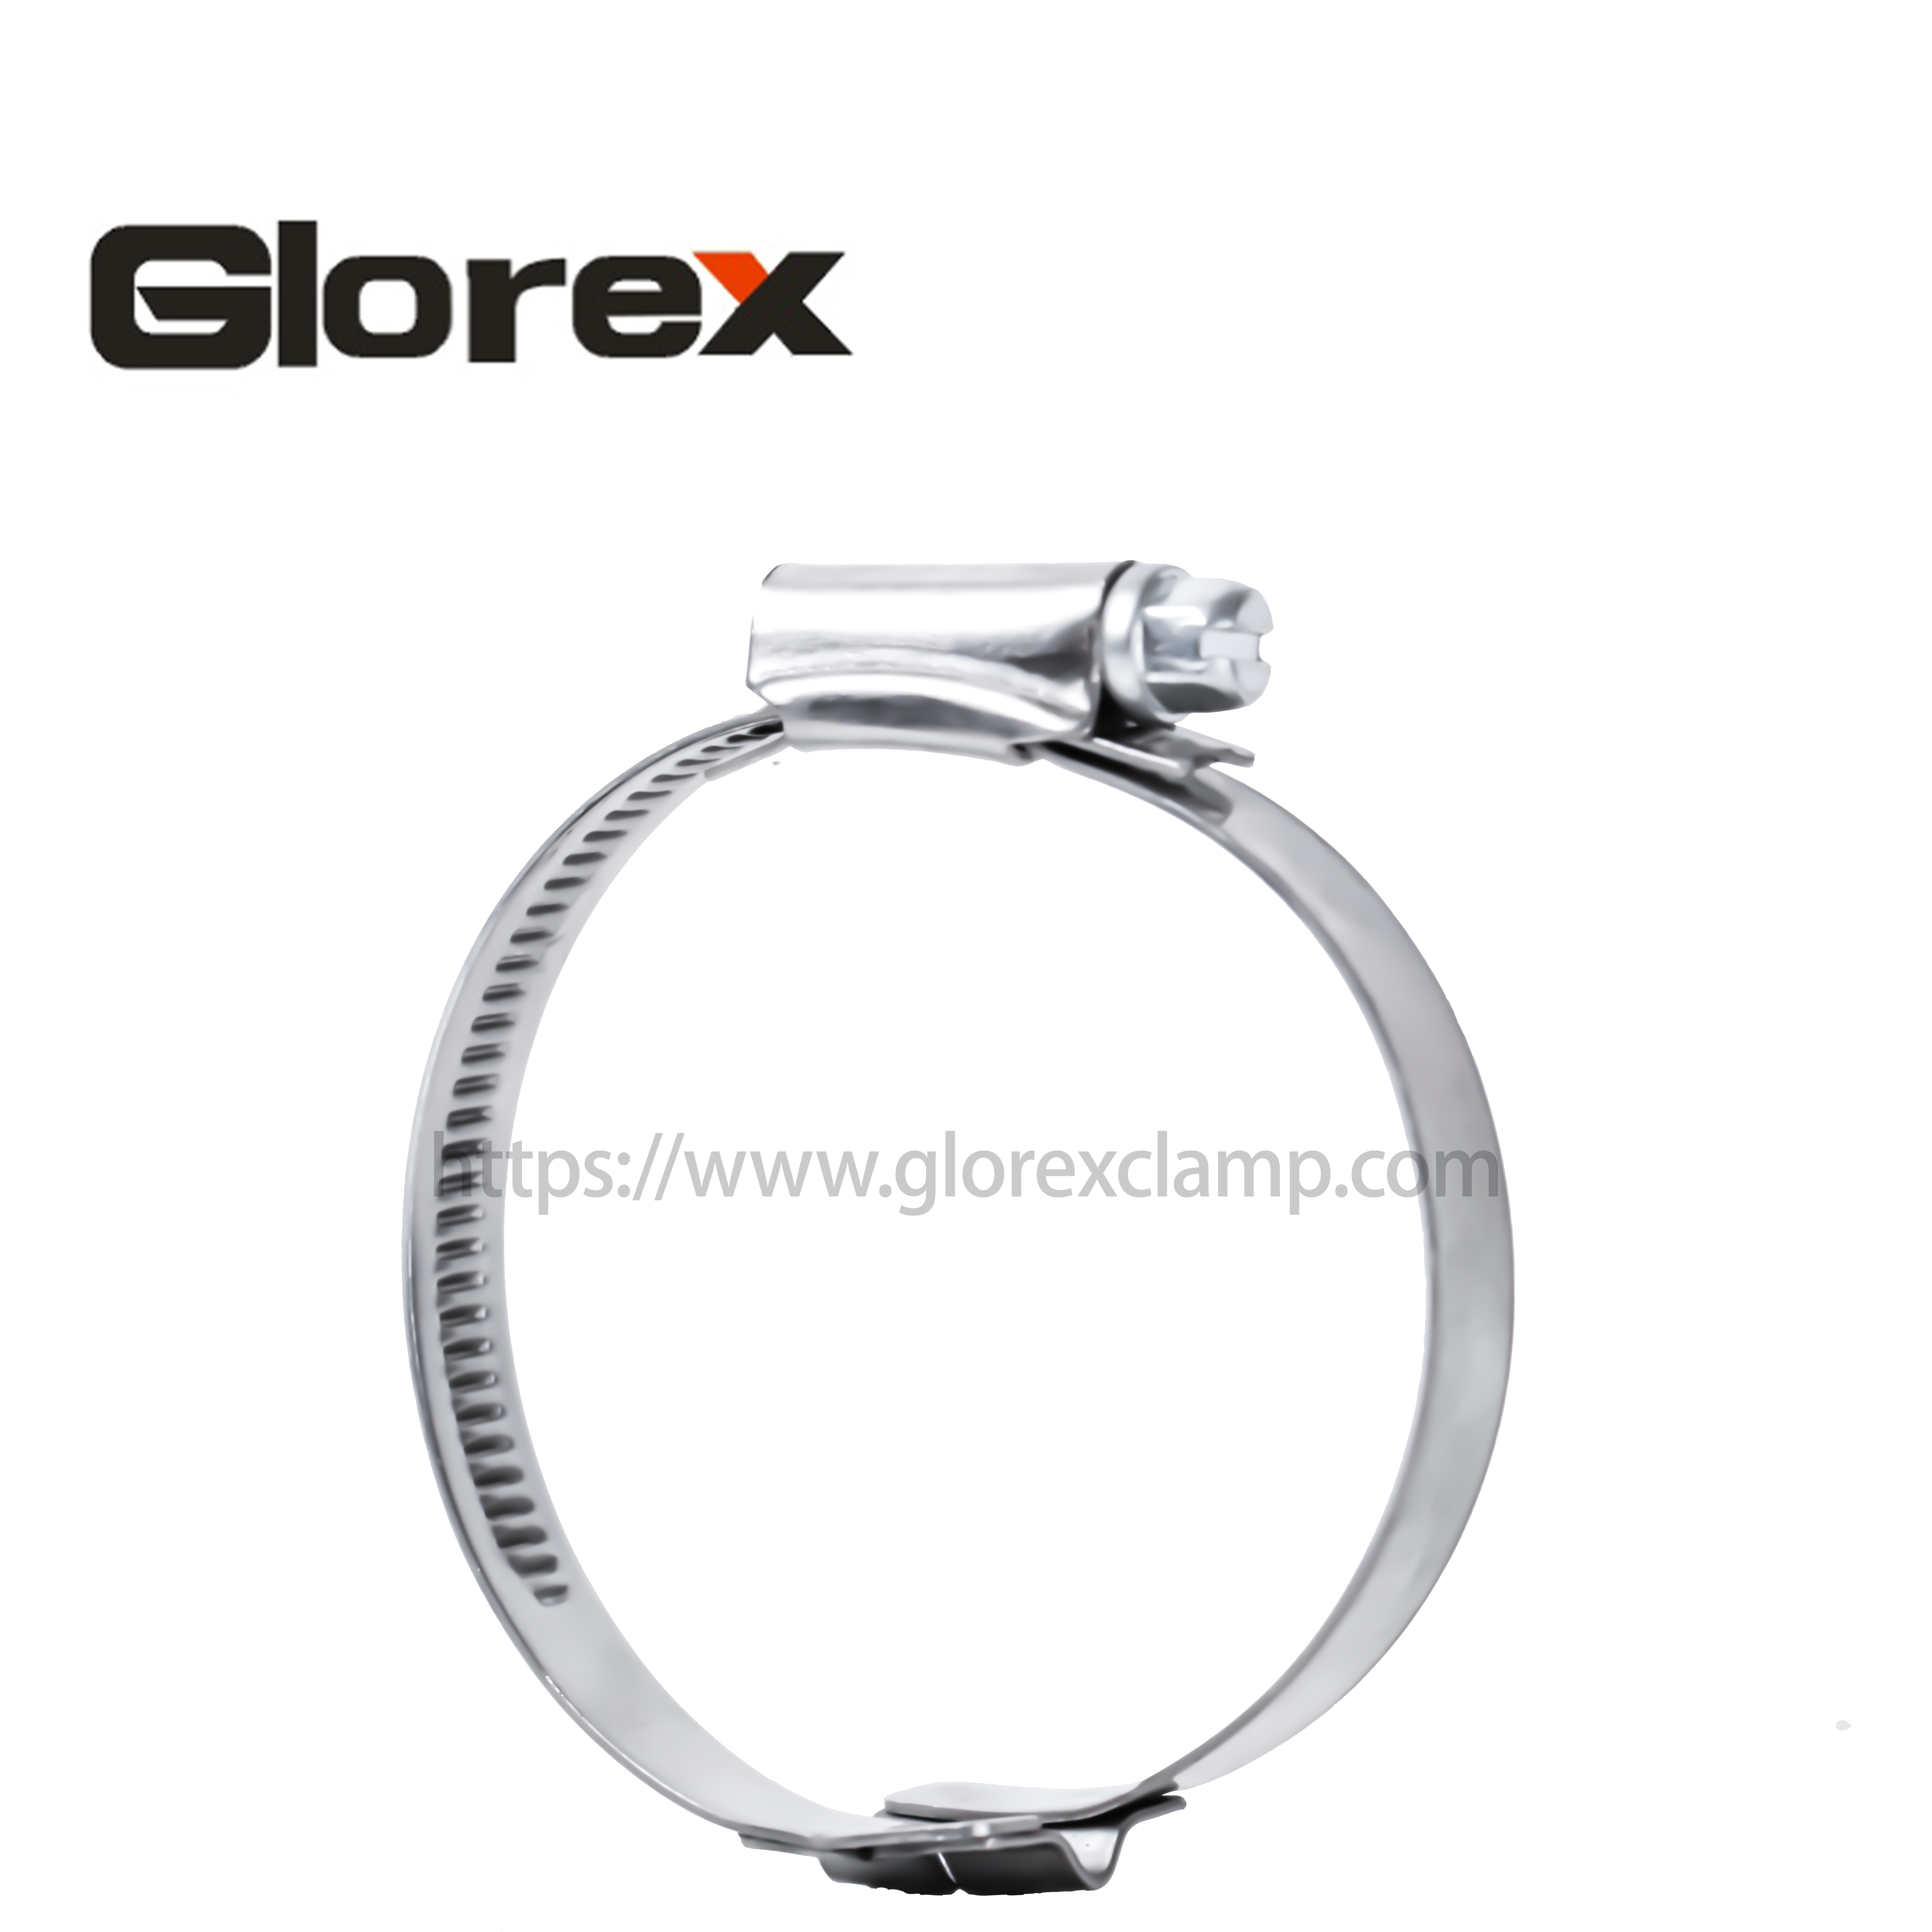 Super Purchasing for 1.5 Pipe Clamp - Bridge hose clamp – Glorex